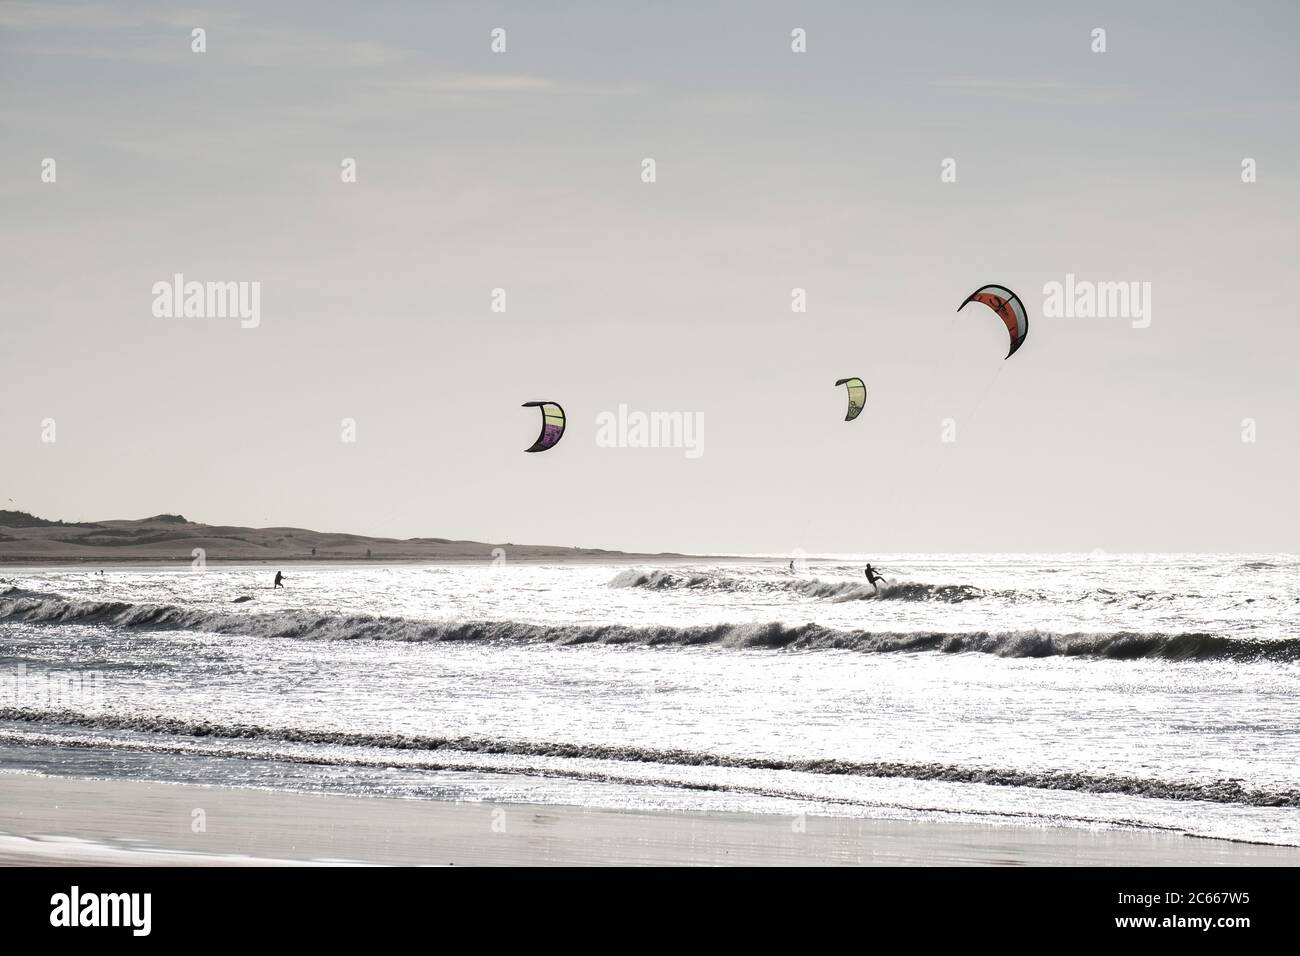 Kitesurfing in Essaouira on the beach Stock Photo